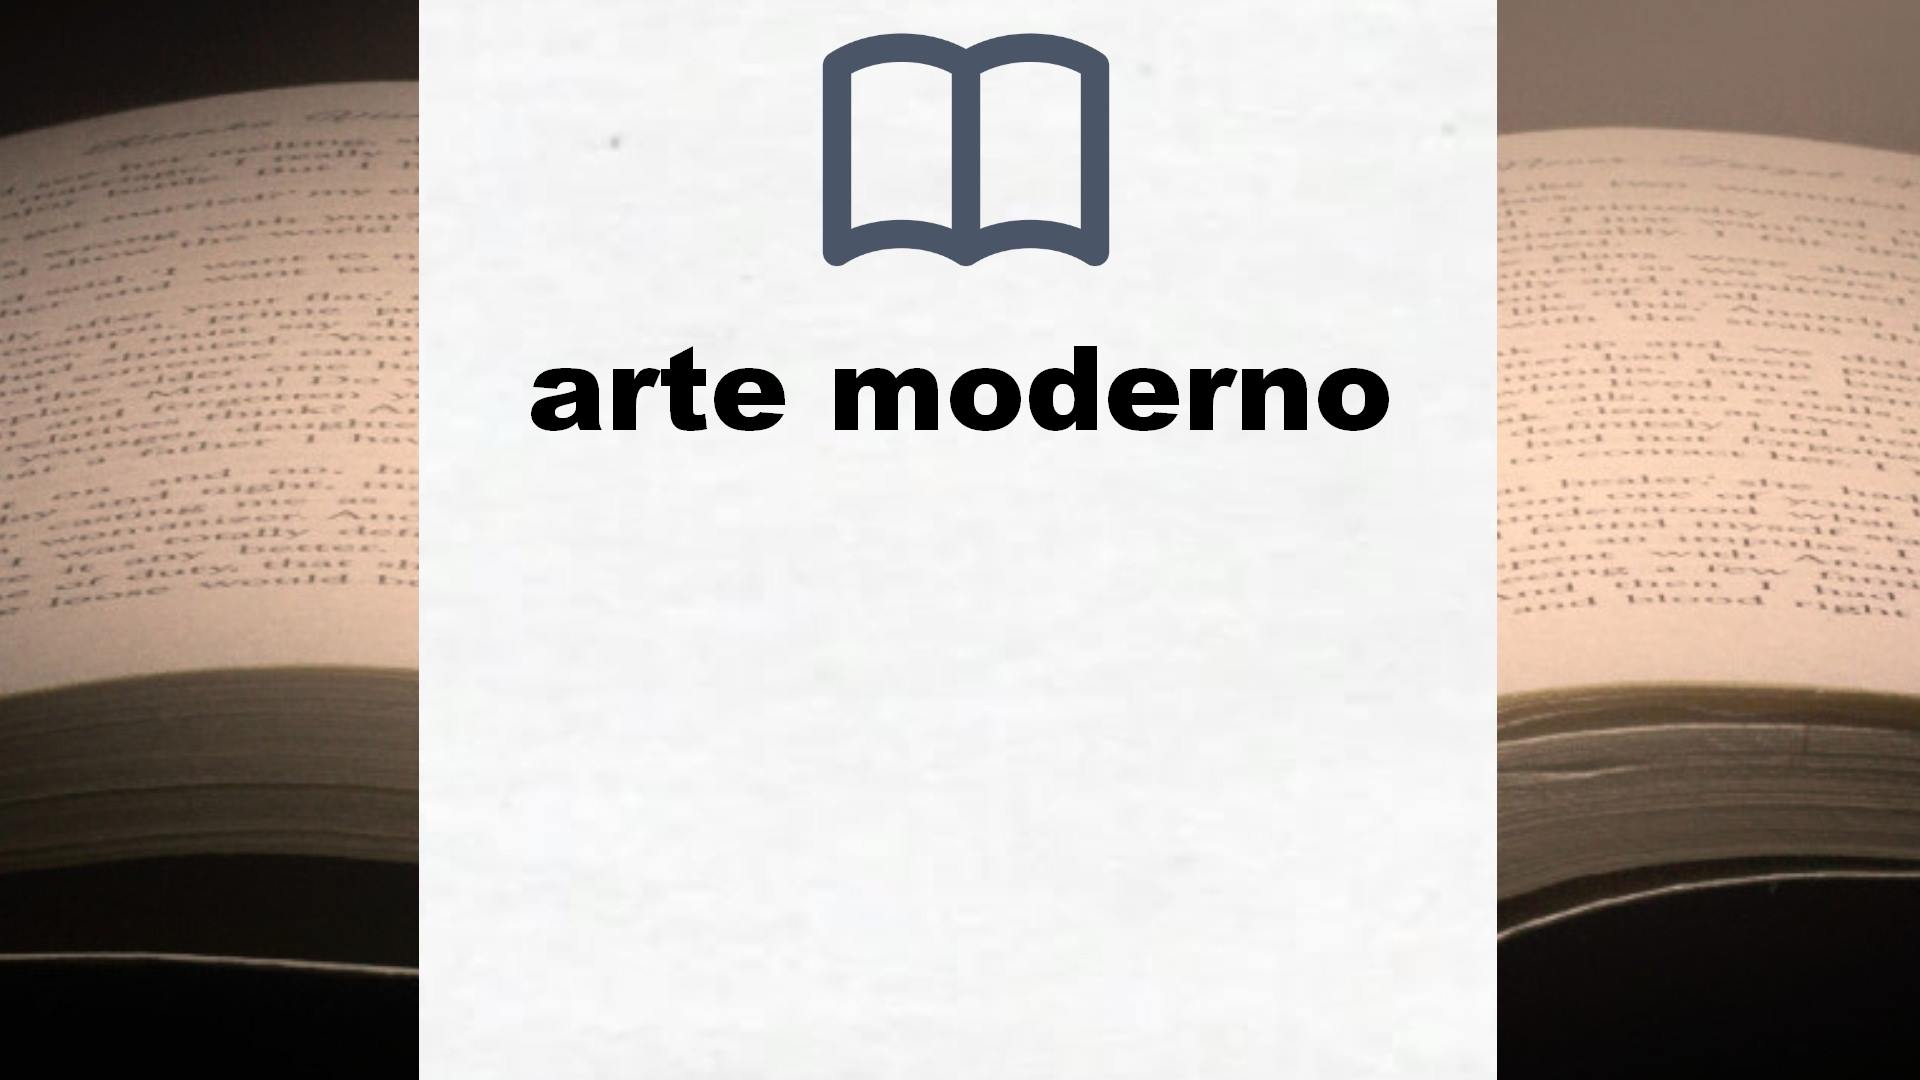 Libros sobre arte moderno